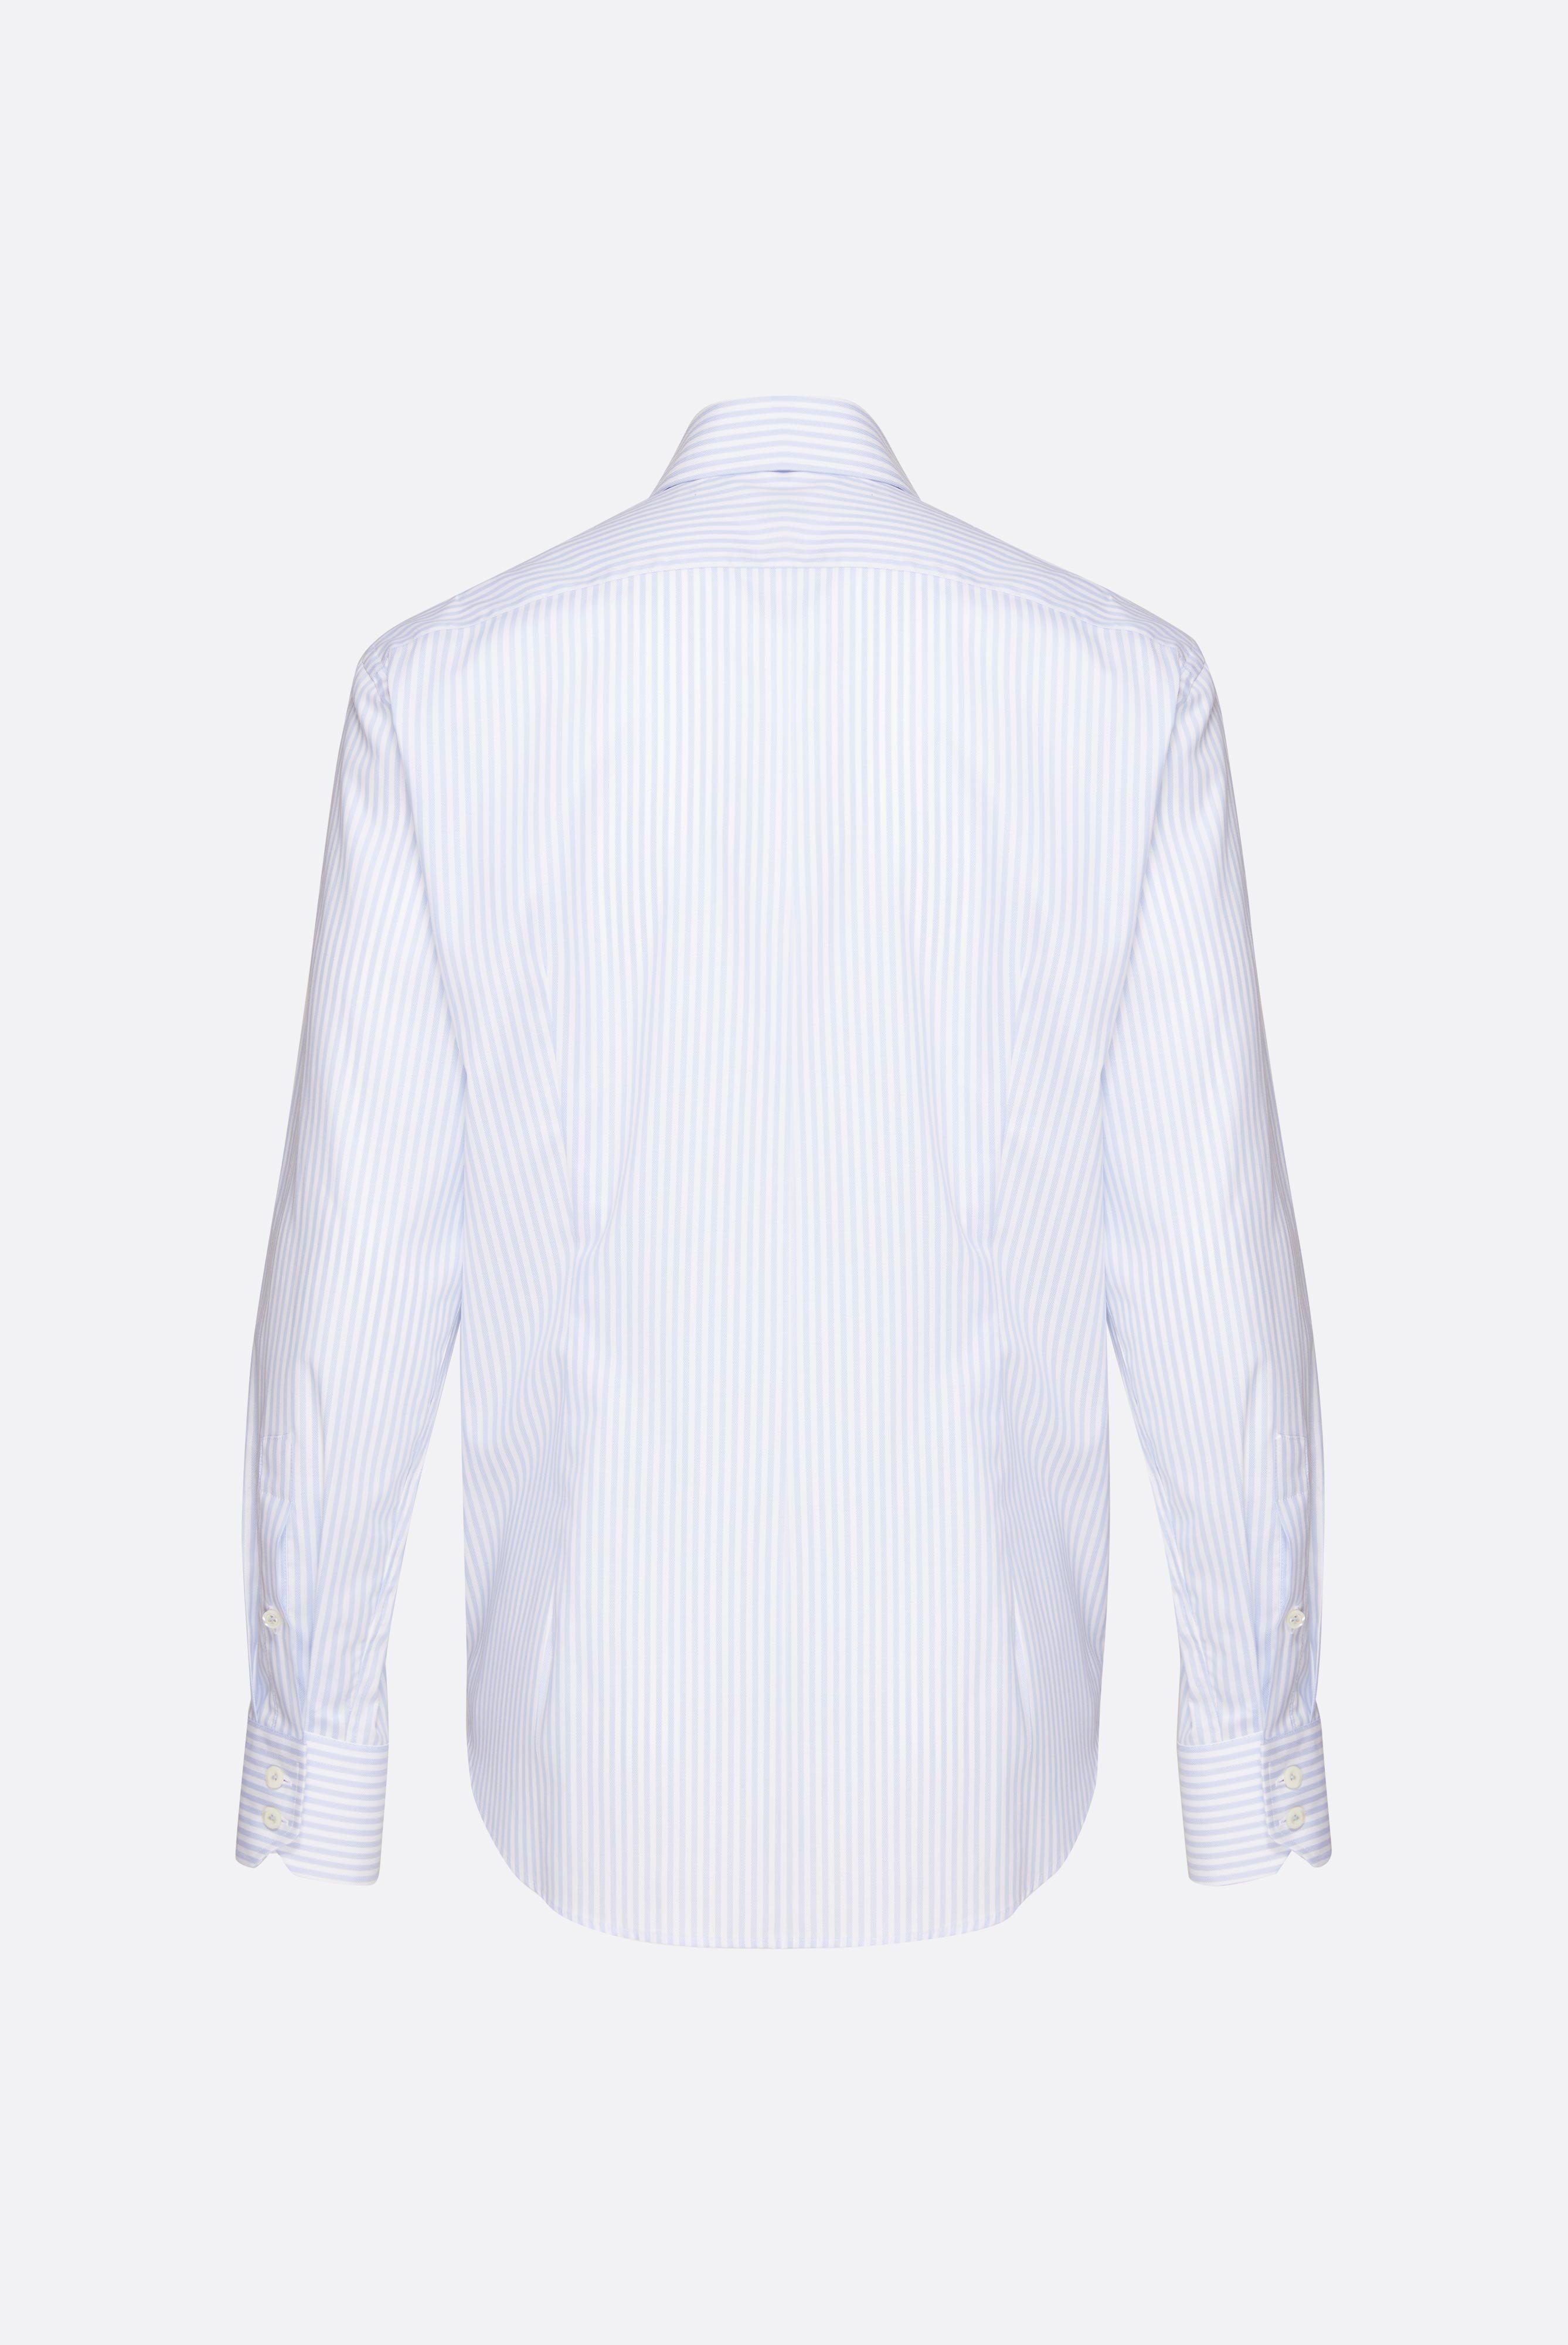 Bügelleichte Hemden+Bügelfreies Hemd mit Streifen Tailor Fit+20.2020.BQ.152101.007.44